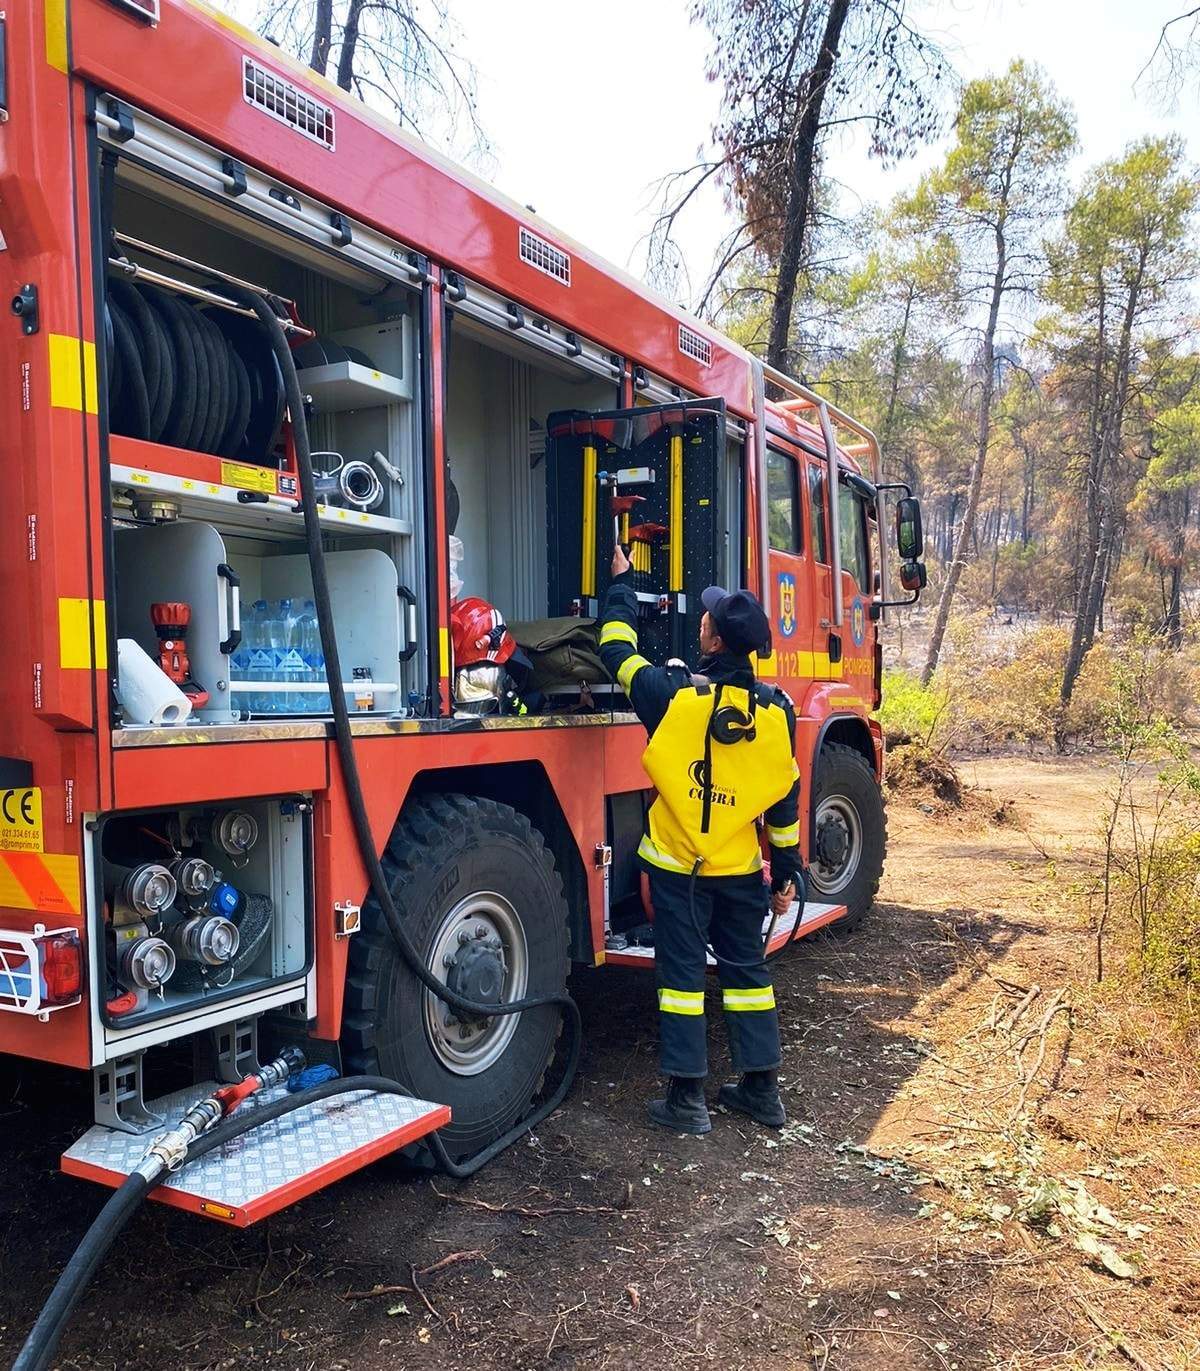 142 de pompieri români vor pleca într-o nouă misiune. Florin Cîțu: "Grecia are din nou nevoie de noi!"